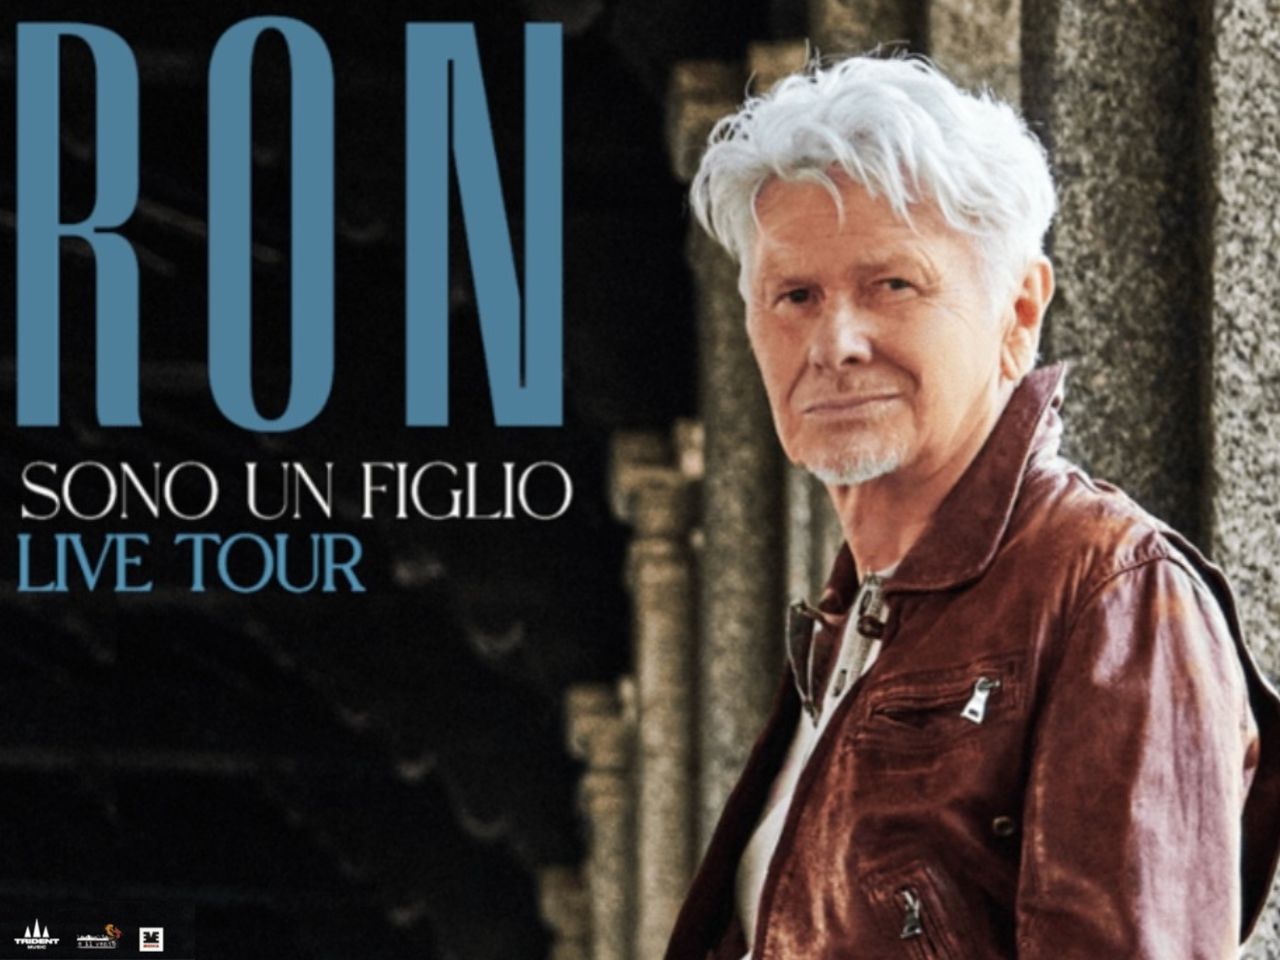 Ron a Senigallia dà il via a “Sono un figlio live tour”